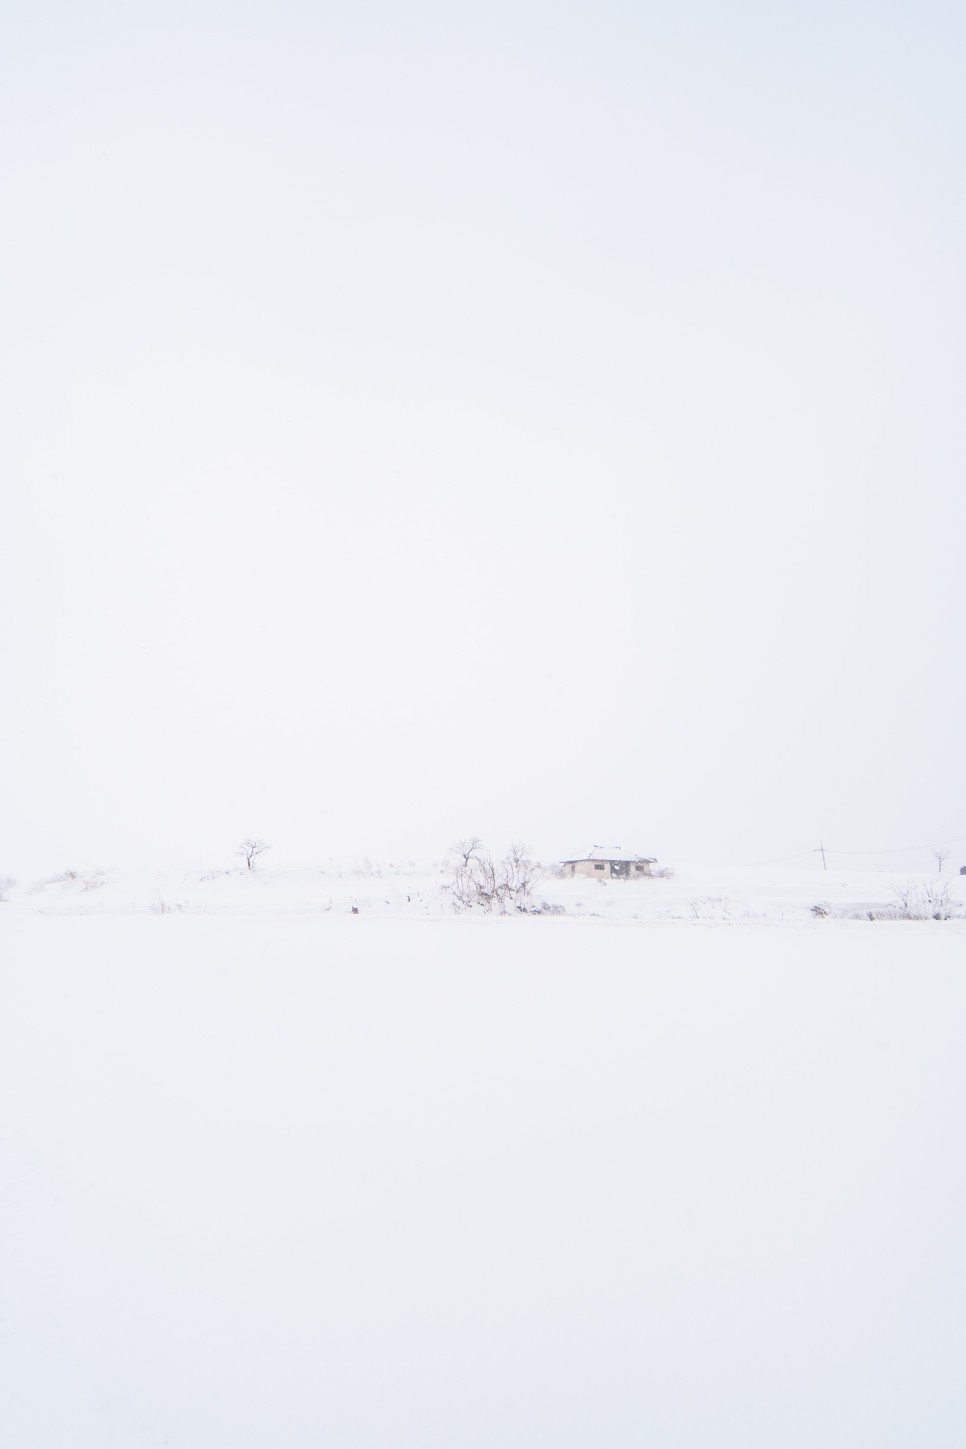 [전라도 출사] 장성 외딴집 겨울 눈 쌓인 풍경